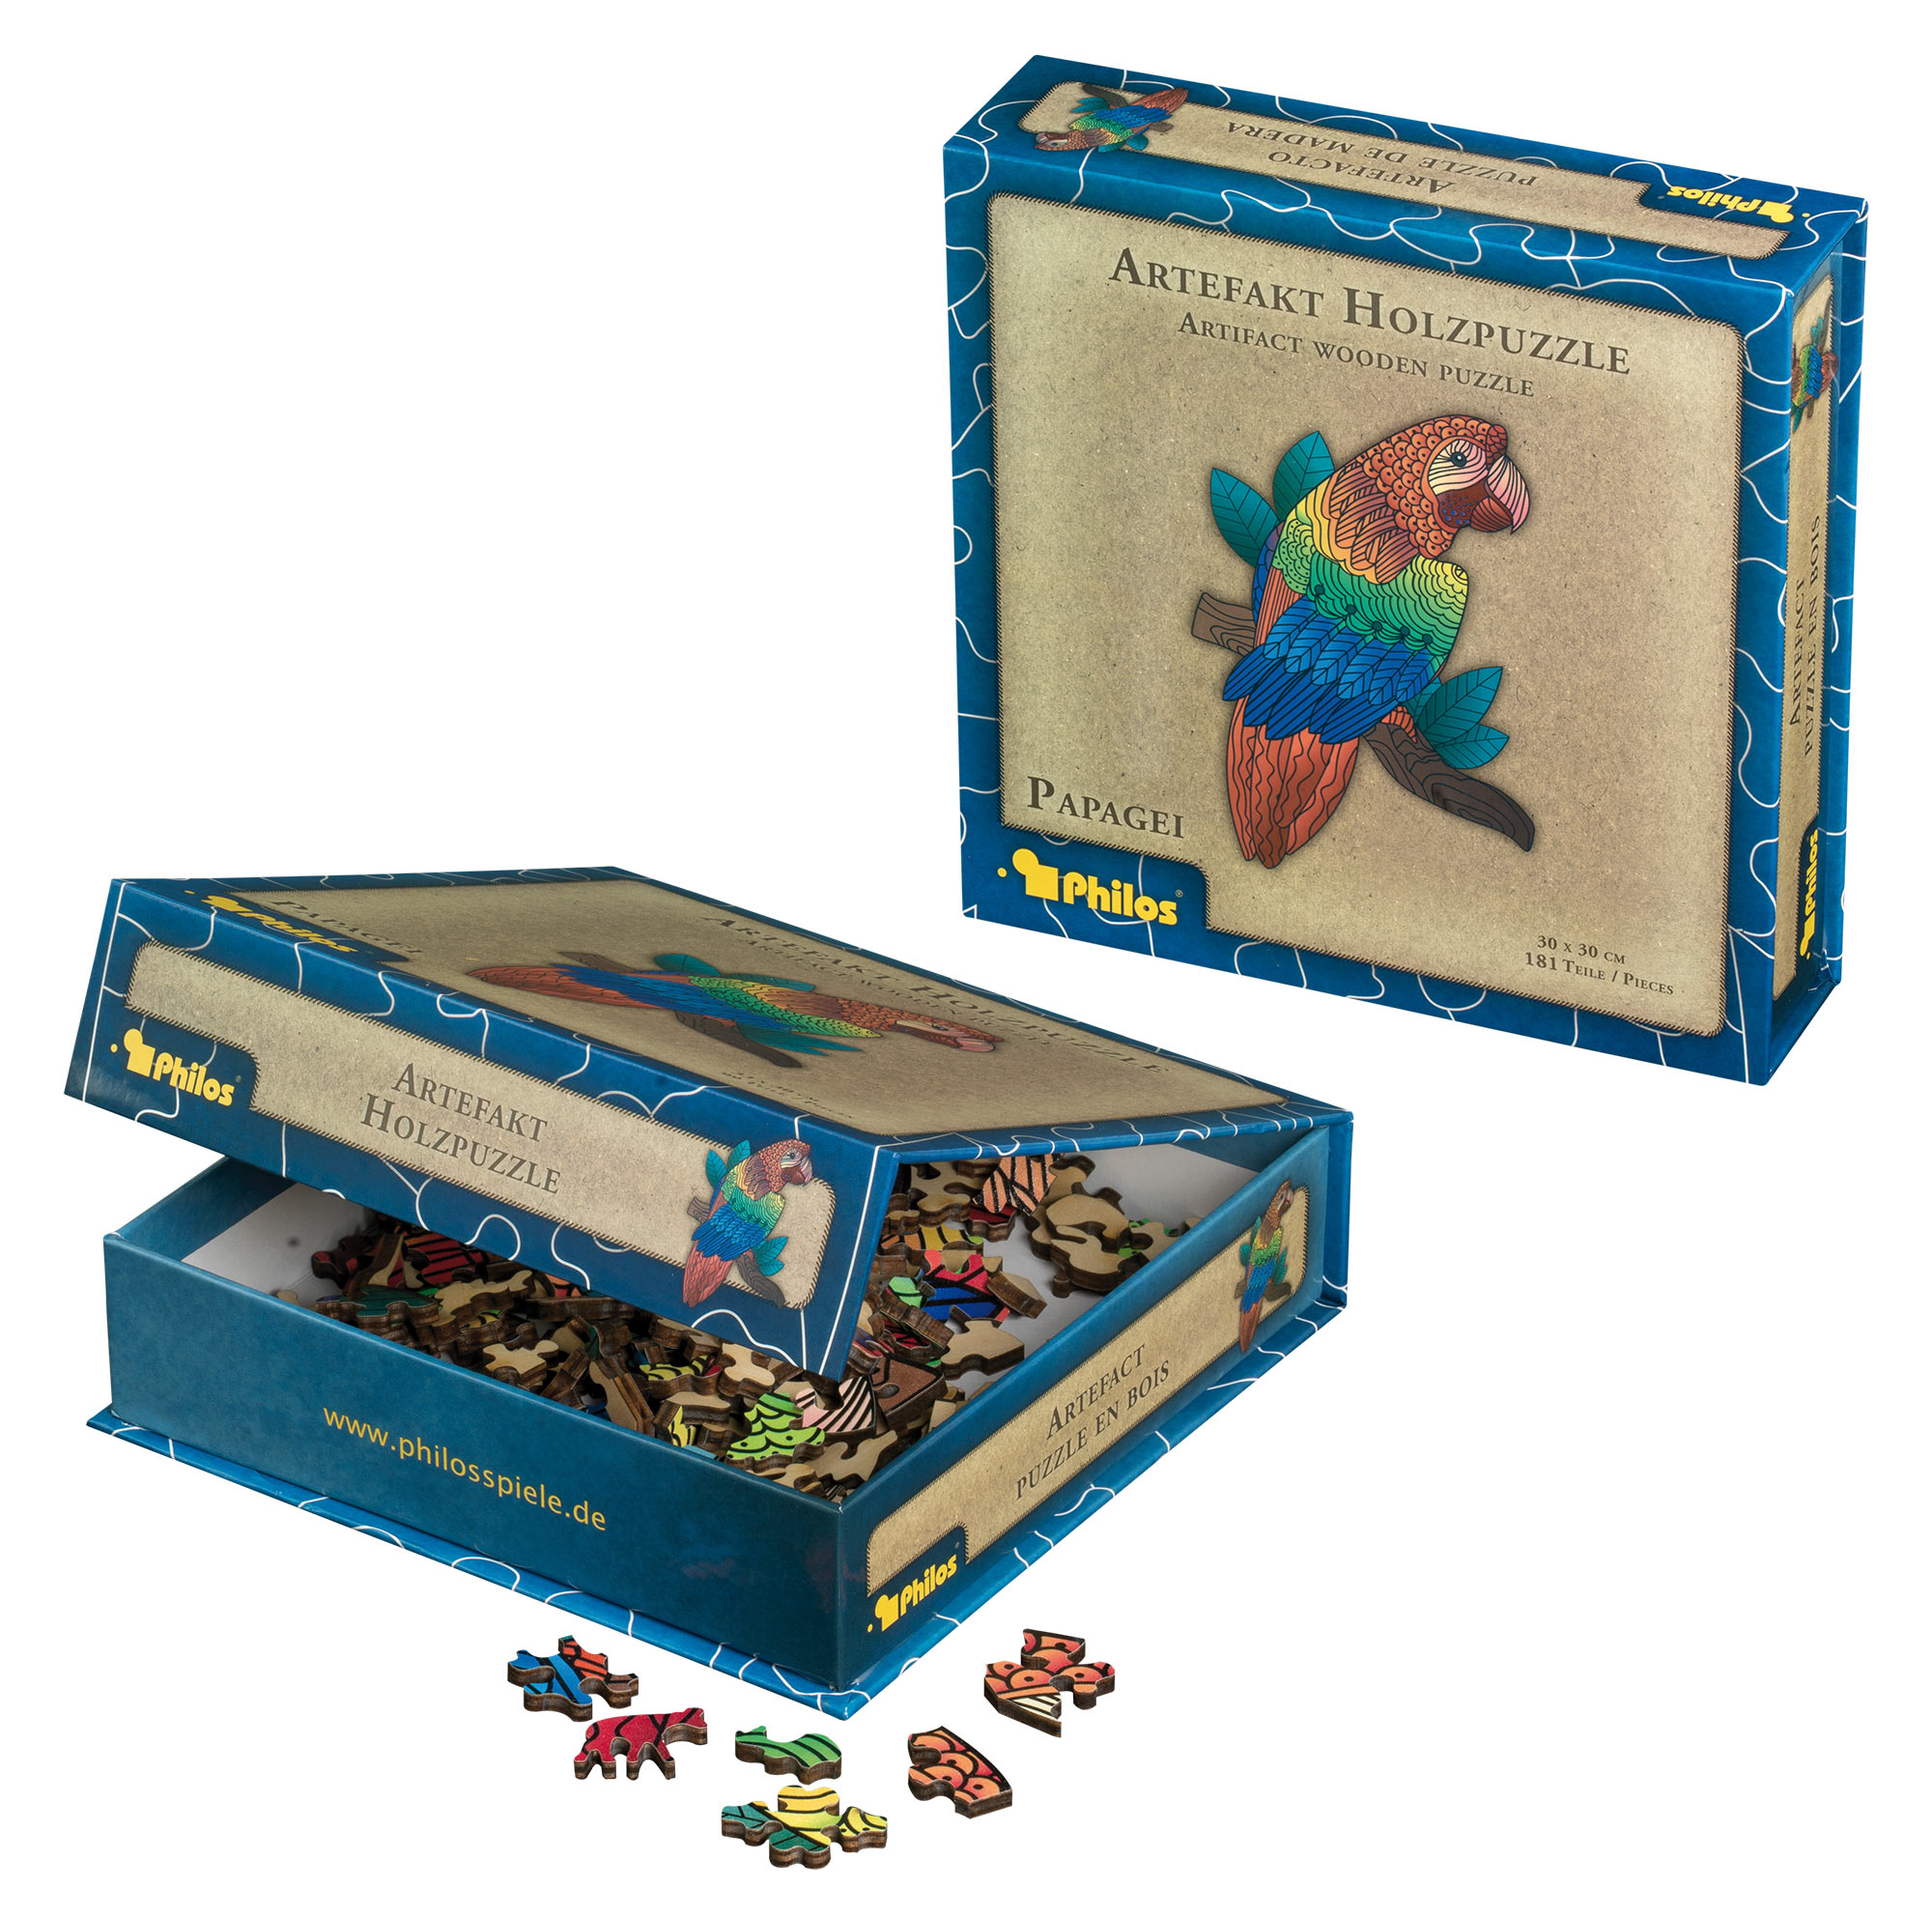 Artefakt Holzpuzzle Papagei, 181 Teile, in magnetischer Klappschachtel